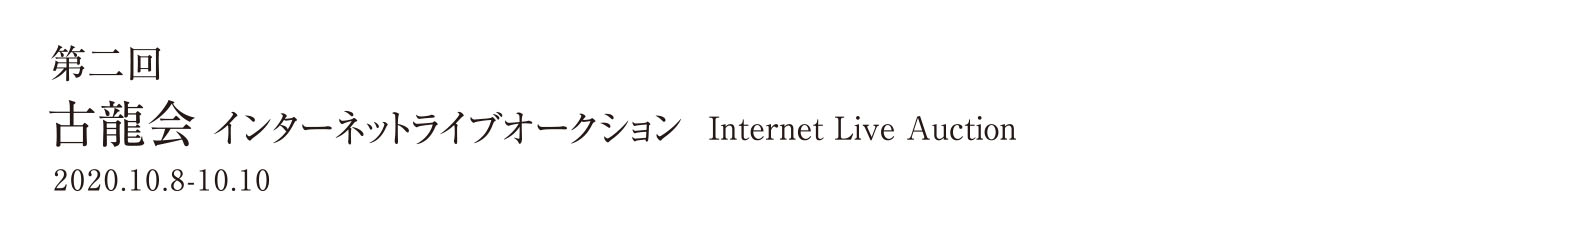 第二回インターネットライブオークション 2020.10.8-10.10